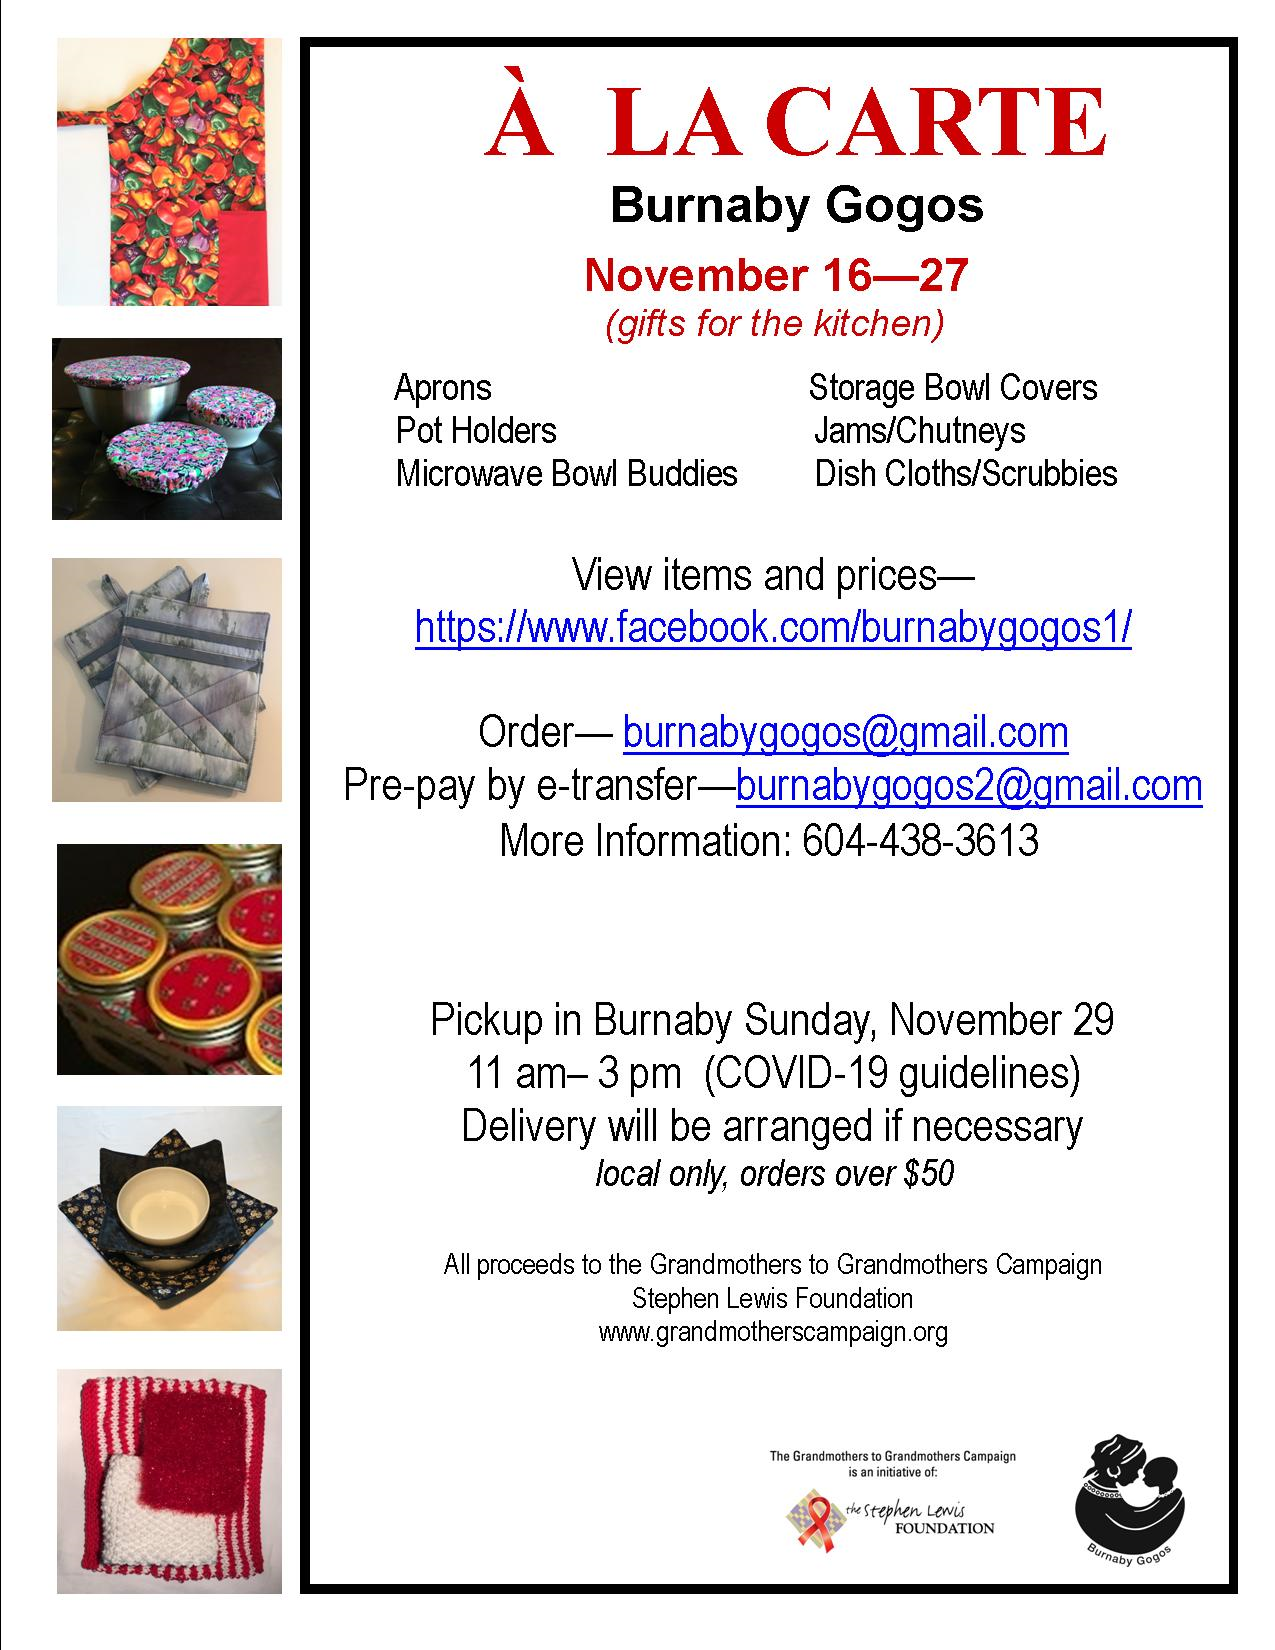 Burnaby Gogos online kitchen sale